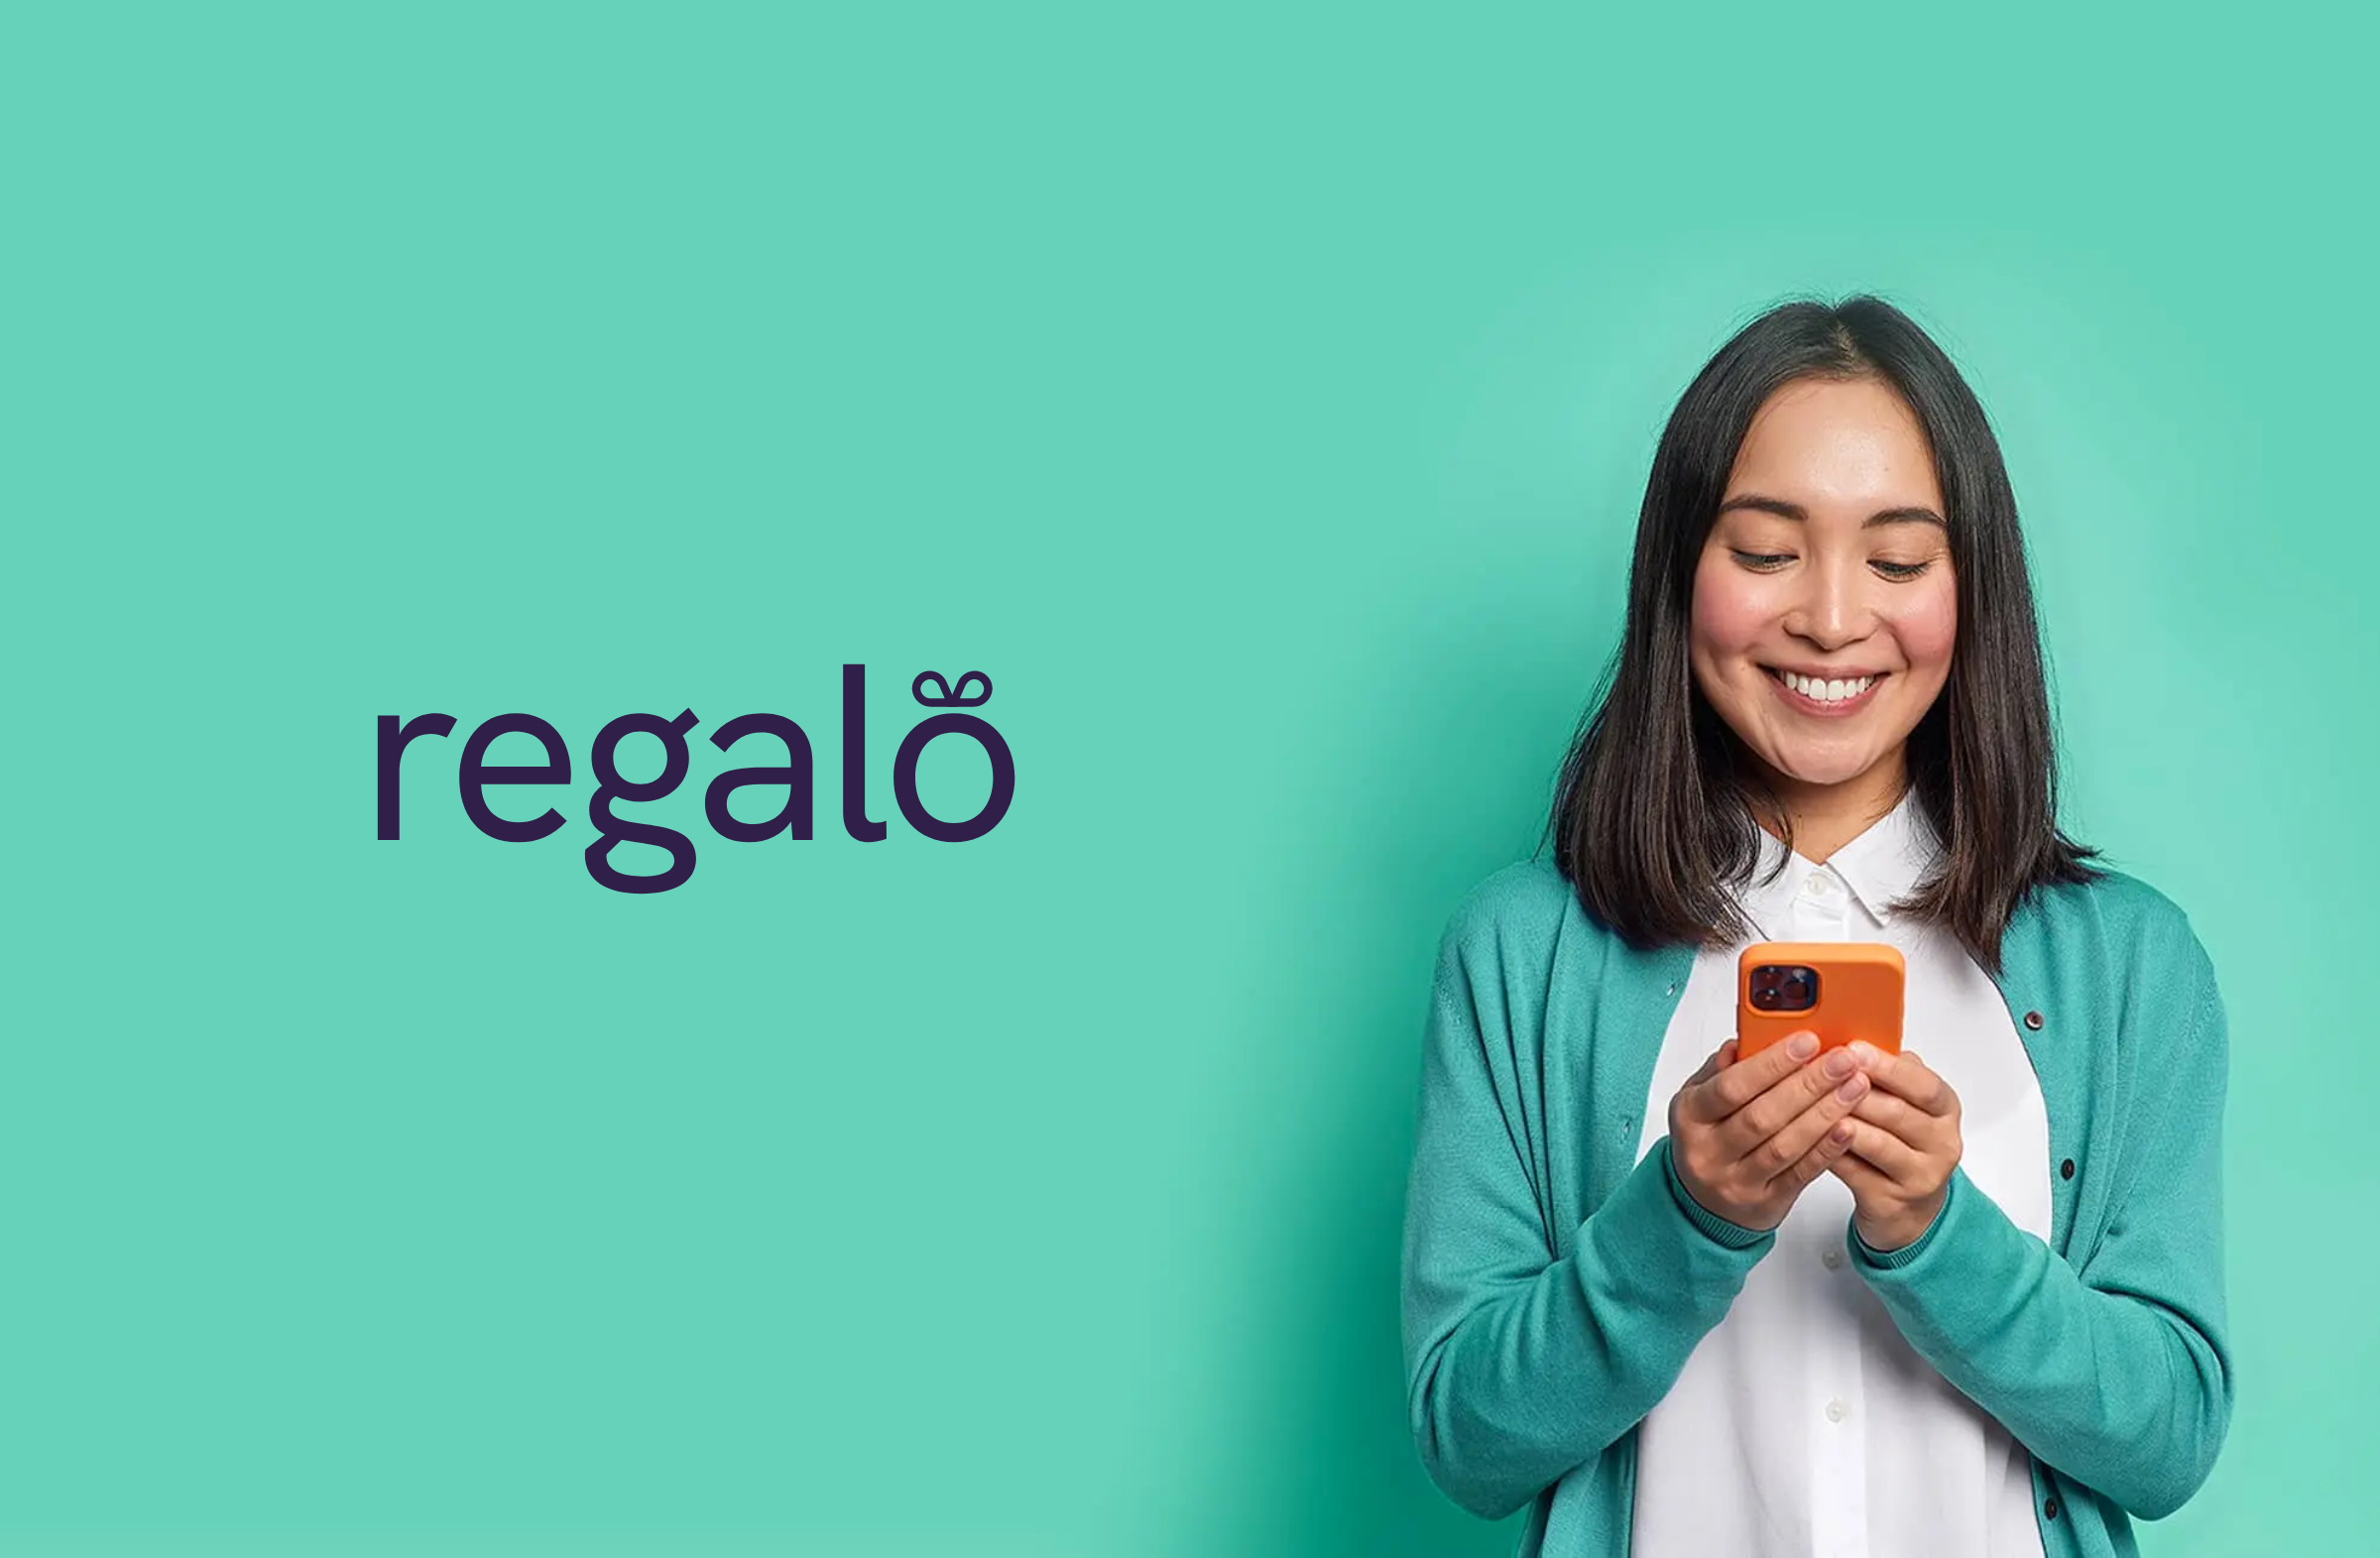 Regalo Rebrand Blog Post Full 1 